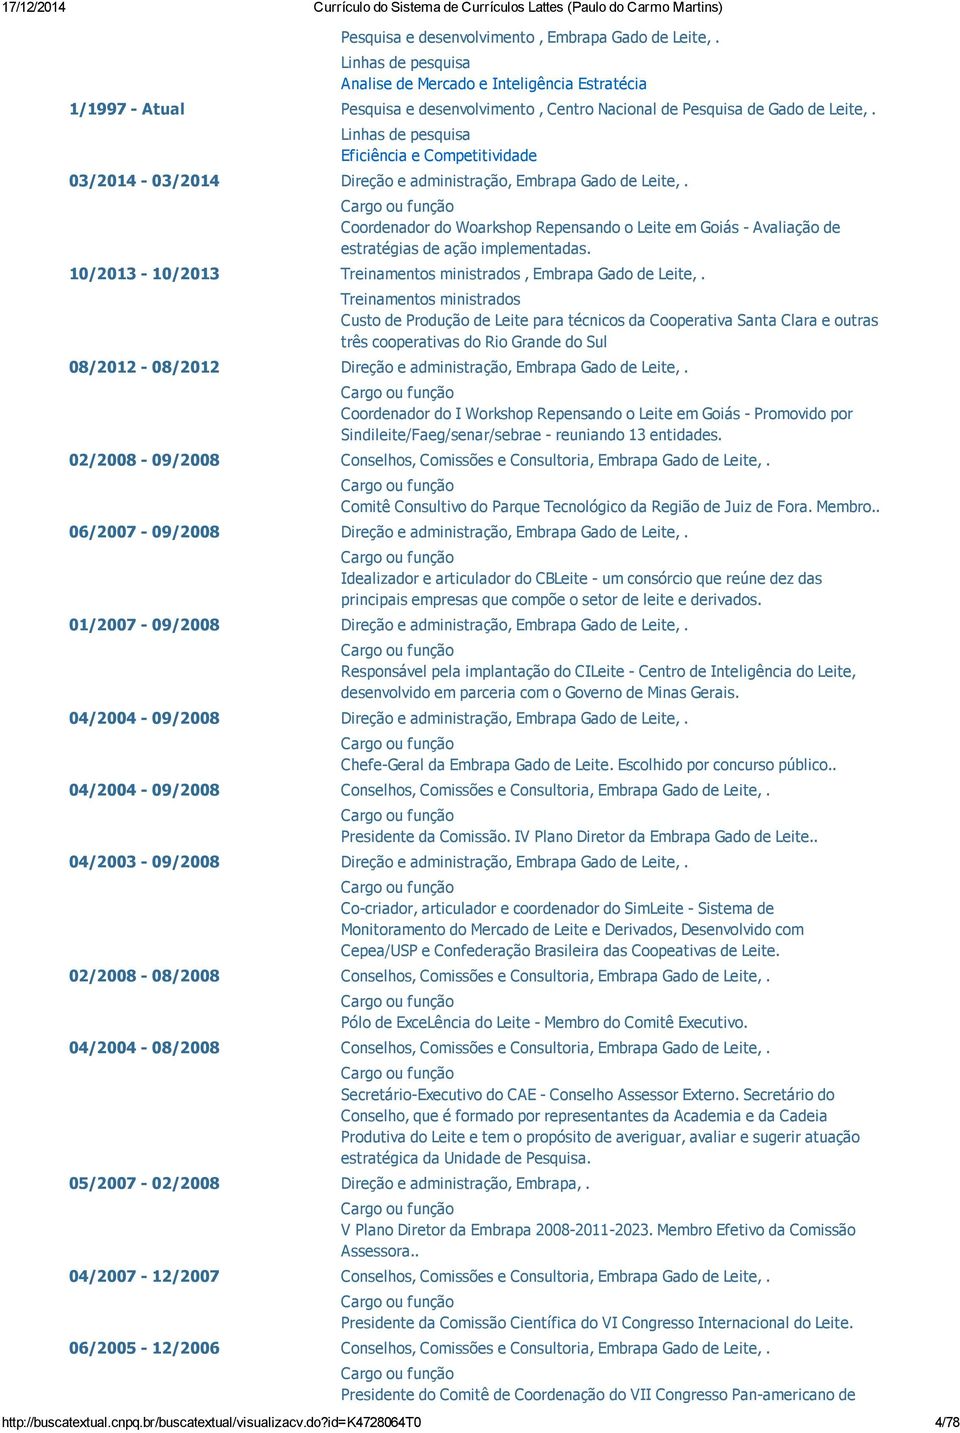 Linhas de pesquisa Eficiência e Competitividade 03/2014 03/2014 Direção e administração, Embrapa Gado de Leite,.